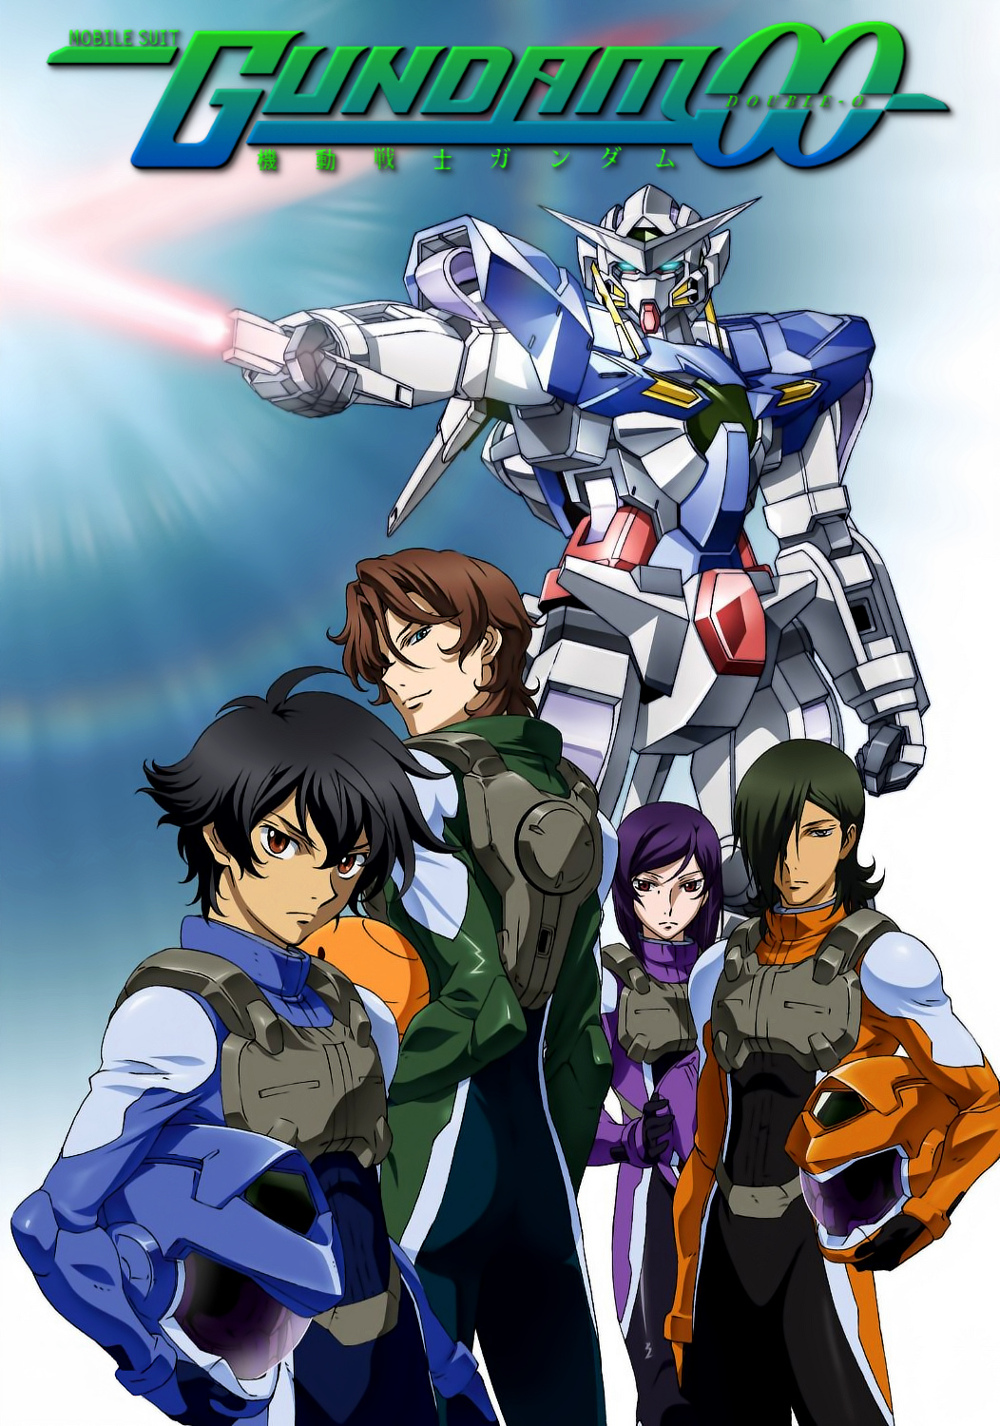 Gundam Wing  Gundam Evolutions  Mobile suit gundam wing Gundam Gundam  mobile suit